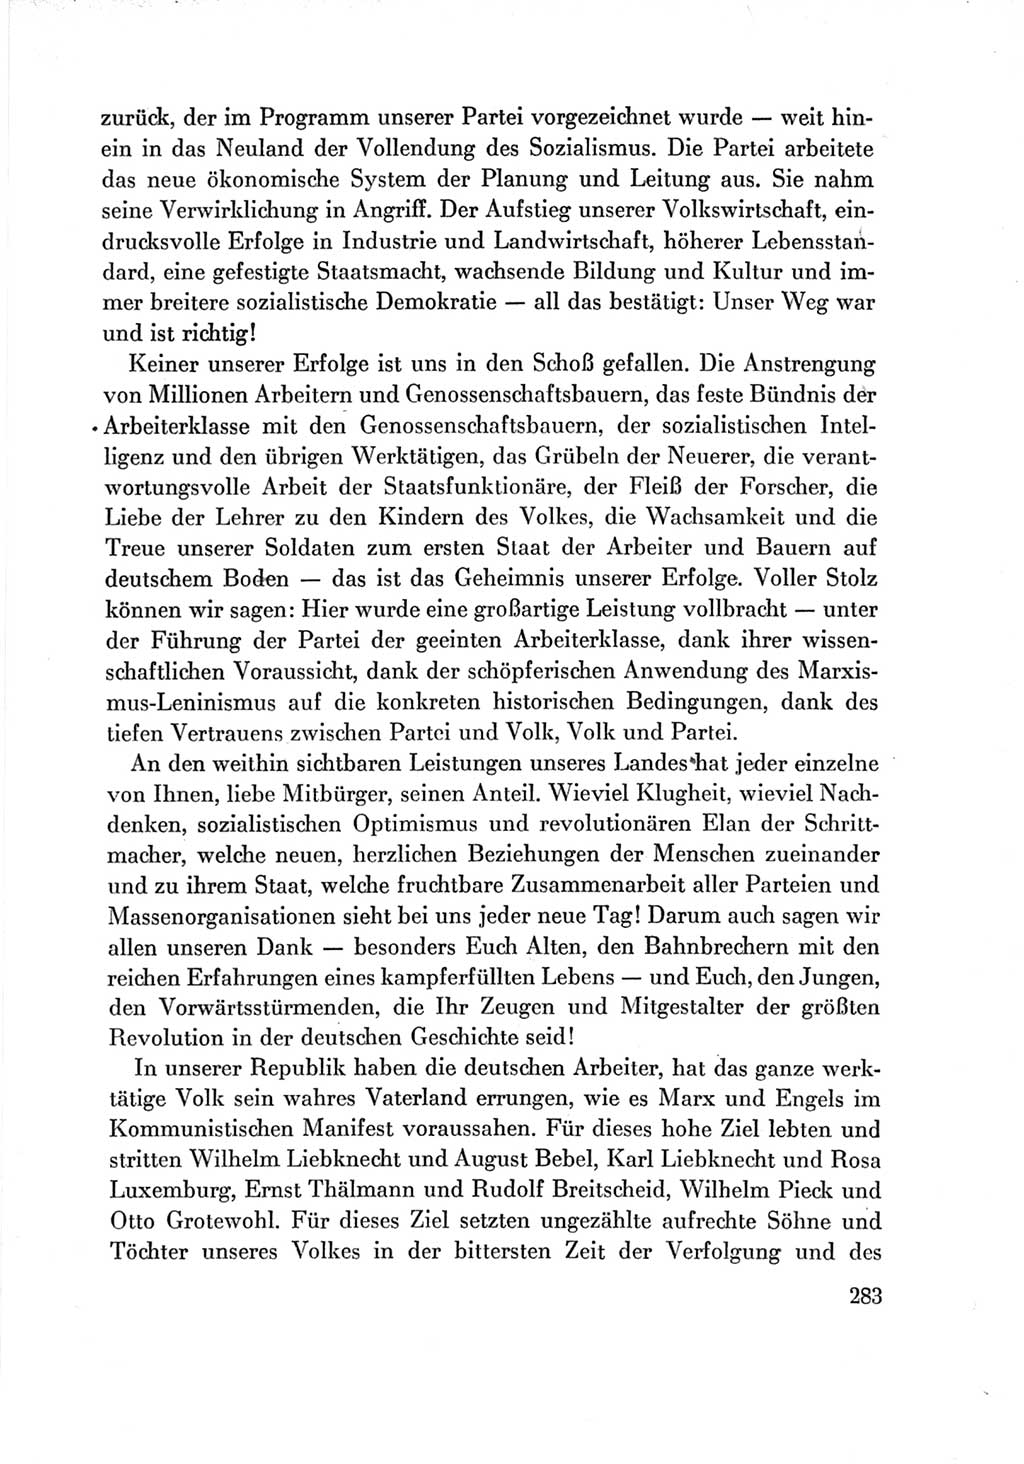 Protokoll der Verhandlungen des Ⅶ. Parteitages der Sozialistischen Einheitspartei Deutschlands (SED) [Deutsche Demokratische Republik (DDR)] 1967, Band Ⅳ, Seite 283 (Prot. Verh. Ⅶ. PT SED DDR 1967, Bd. Ⅳ, S. 283)